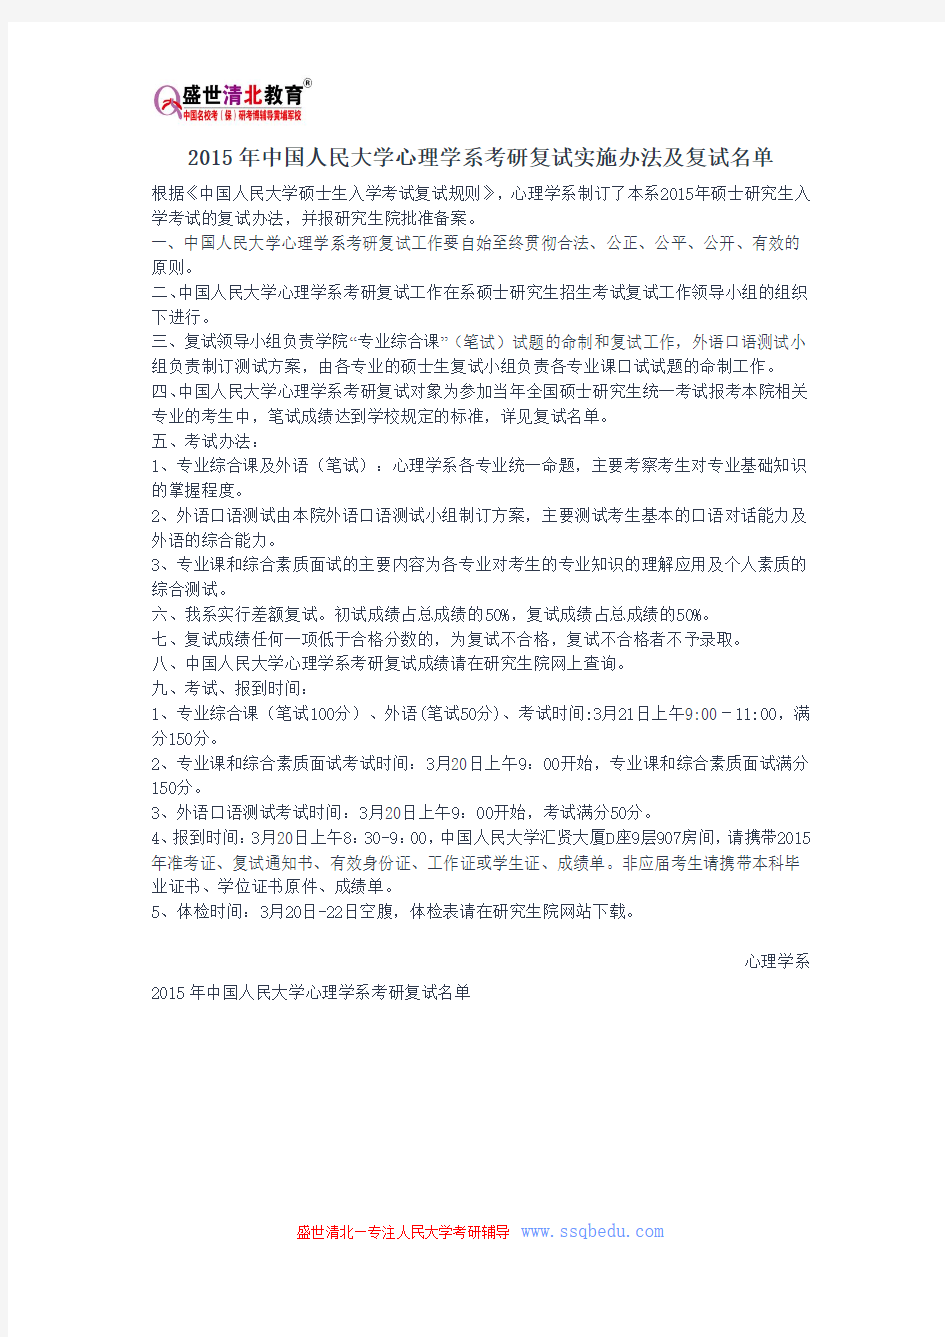 2015年中国人民大学心理学系考研复试实施办法及复试名单